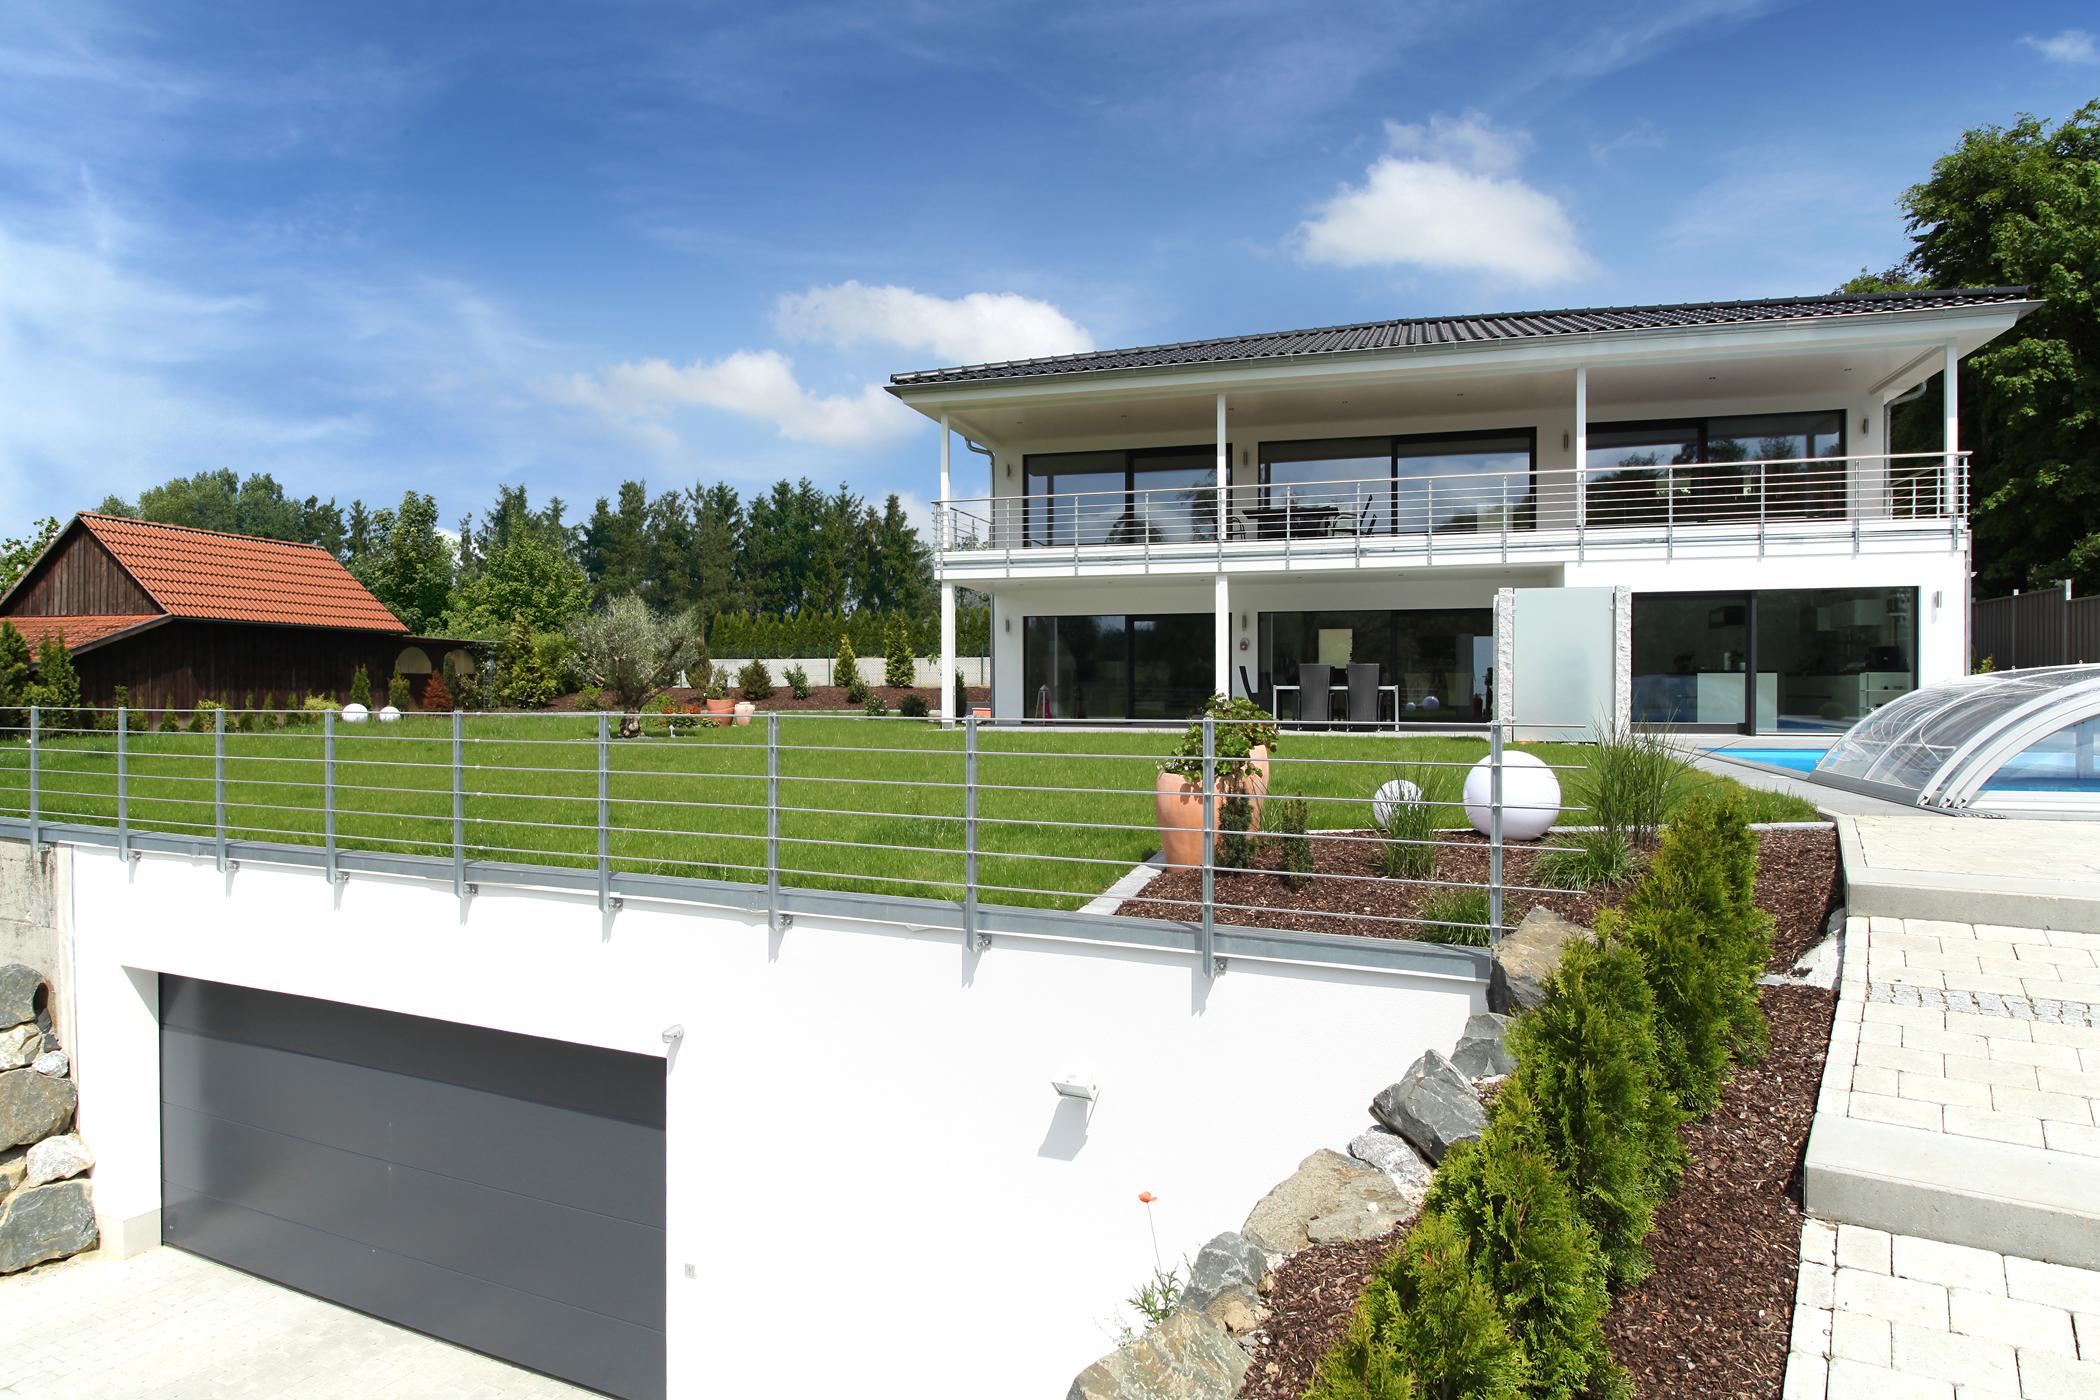 Haus Riederle #terrasse #dachterrasse #garage ©Baufritz GmbH & Co. KG